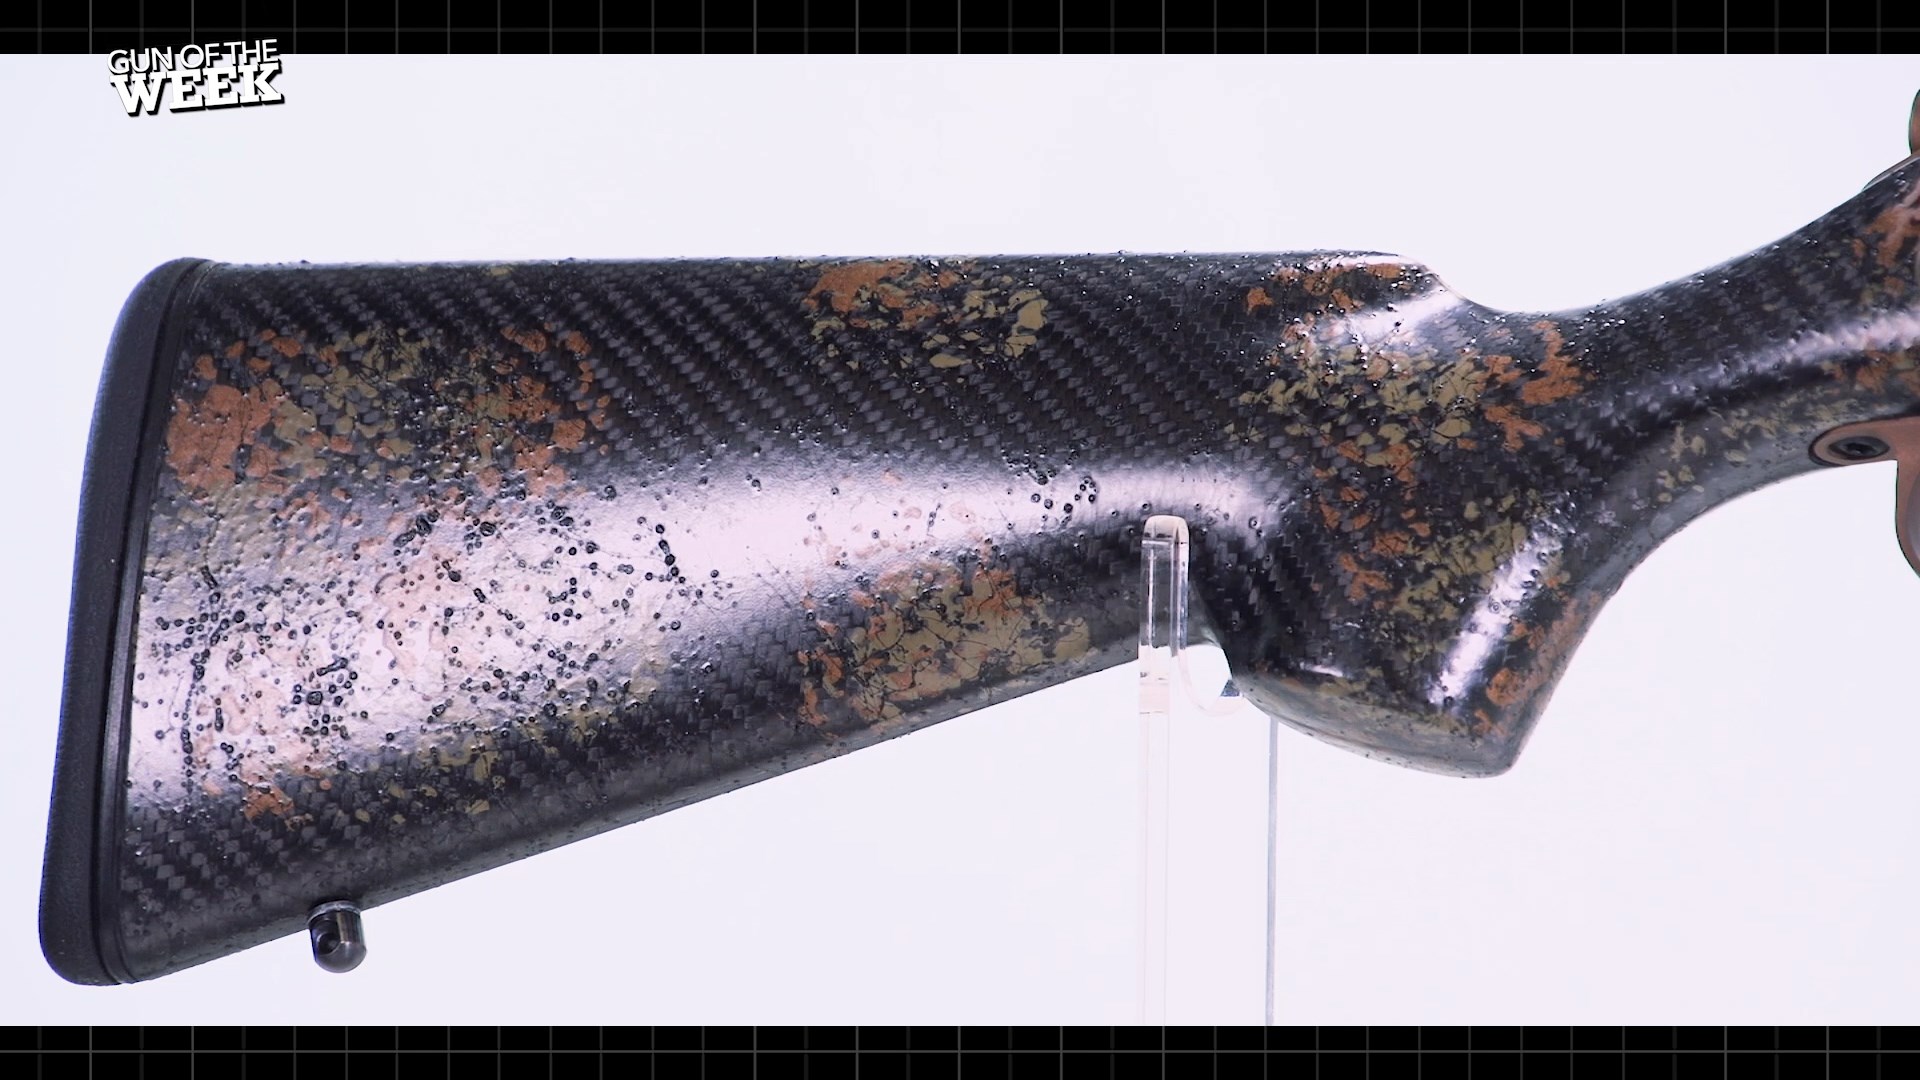 Howa M1500 Super Lite Carbon buttstock gun parts closeup detail paint carbon fiber splatter texture sheen